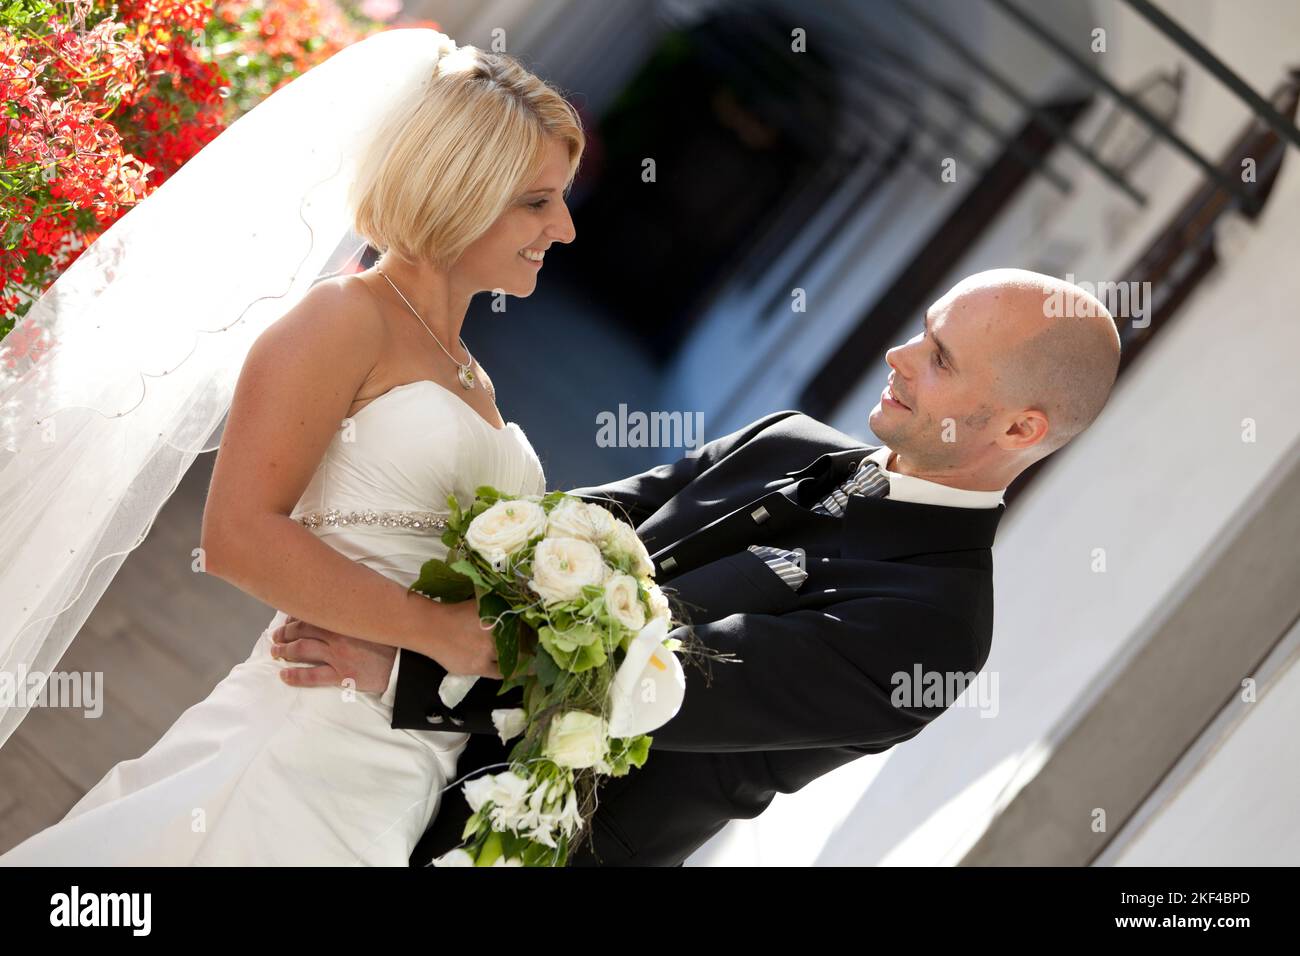 Ein glückliches Brautpaar mit Brautstrauss freut sich über die Hochzeit, Blond, Blonde, Blondine, 30, 35, Jahre, Anzugträger, Stock Photo